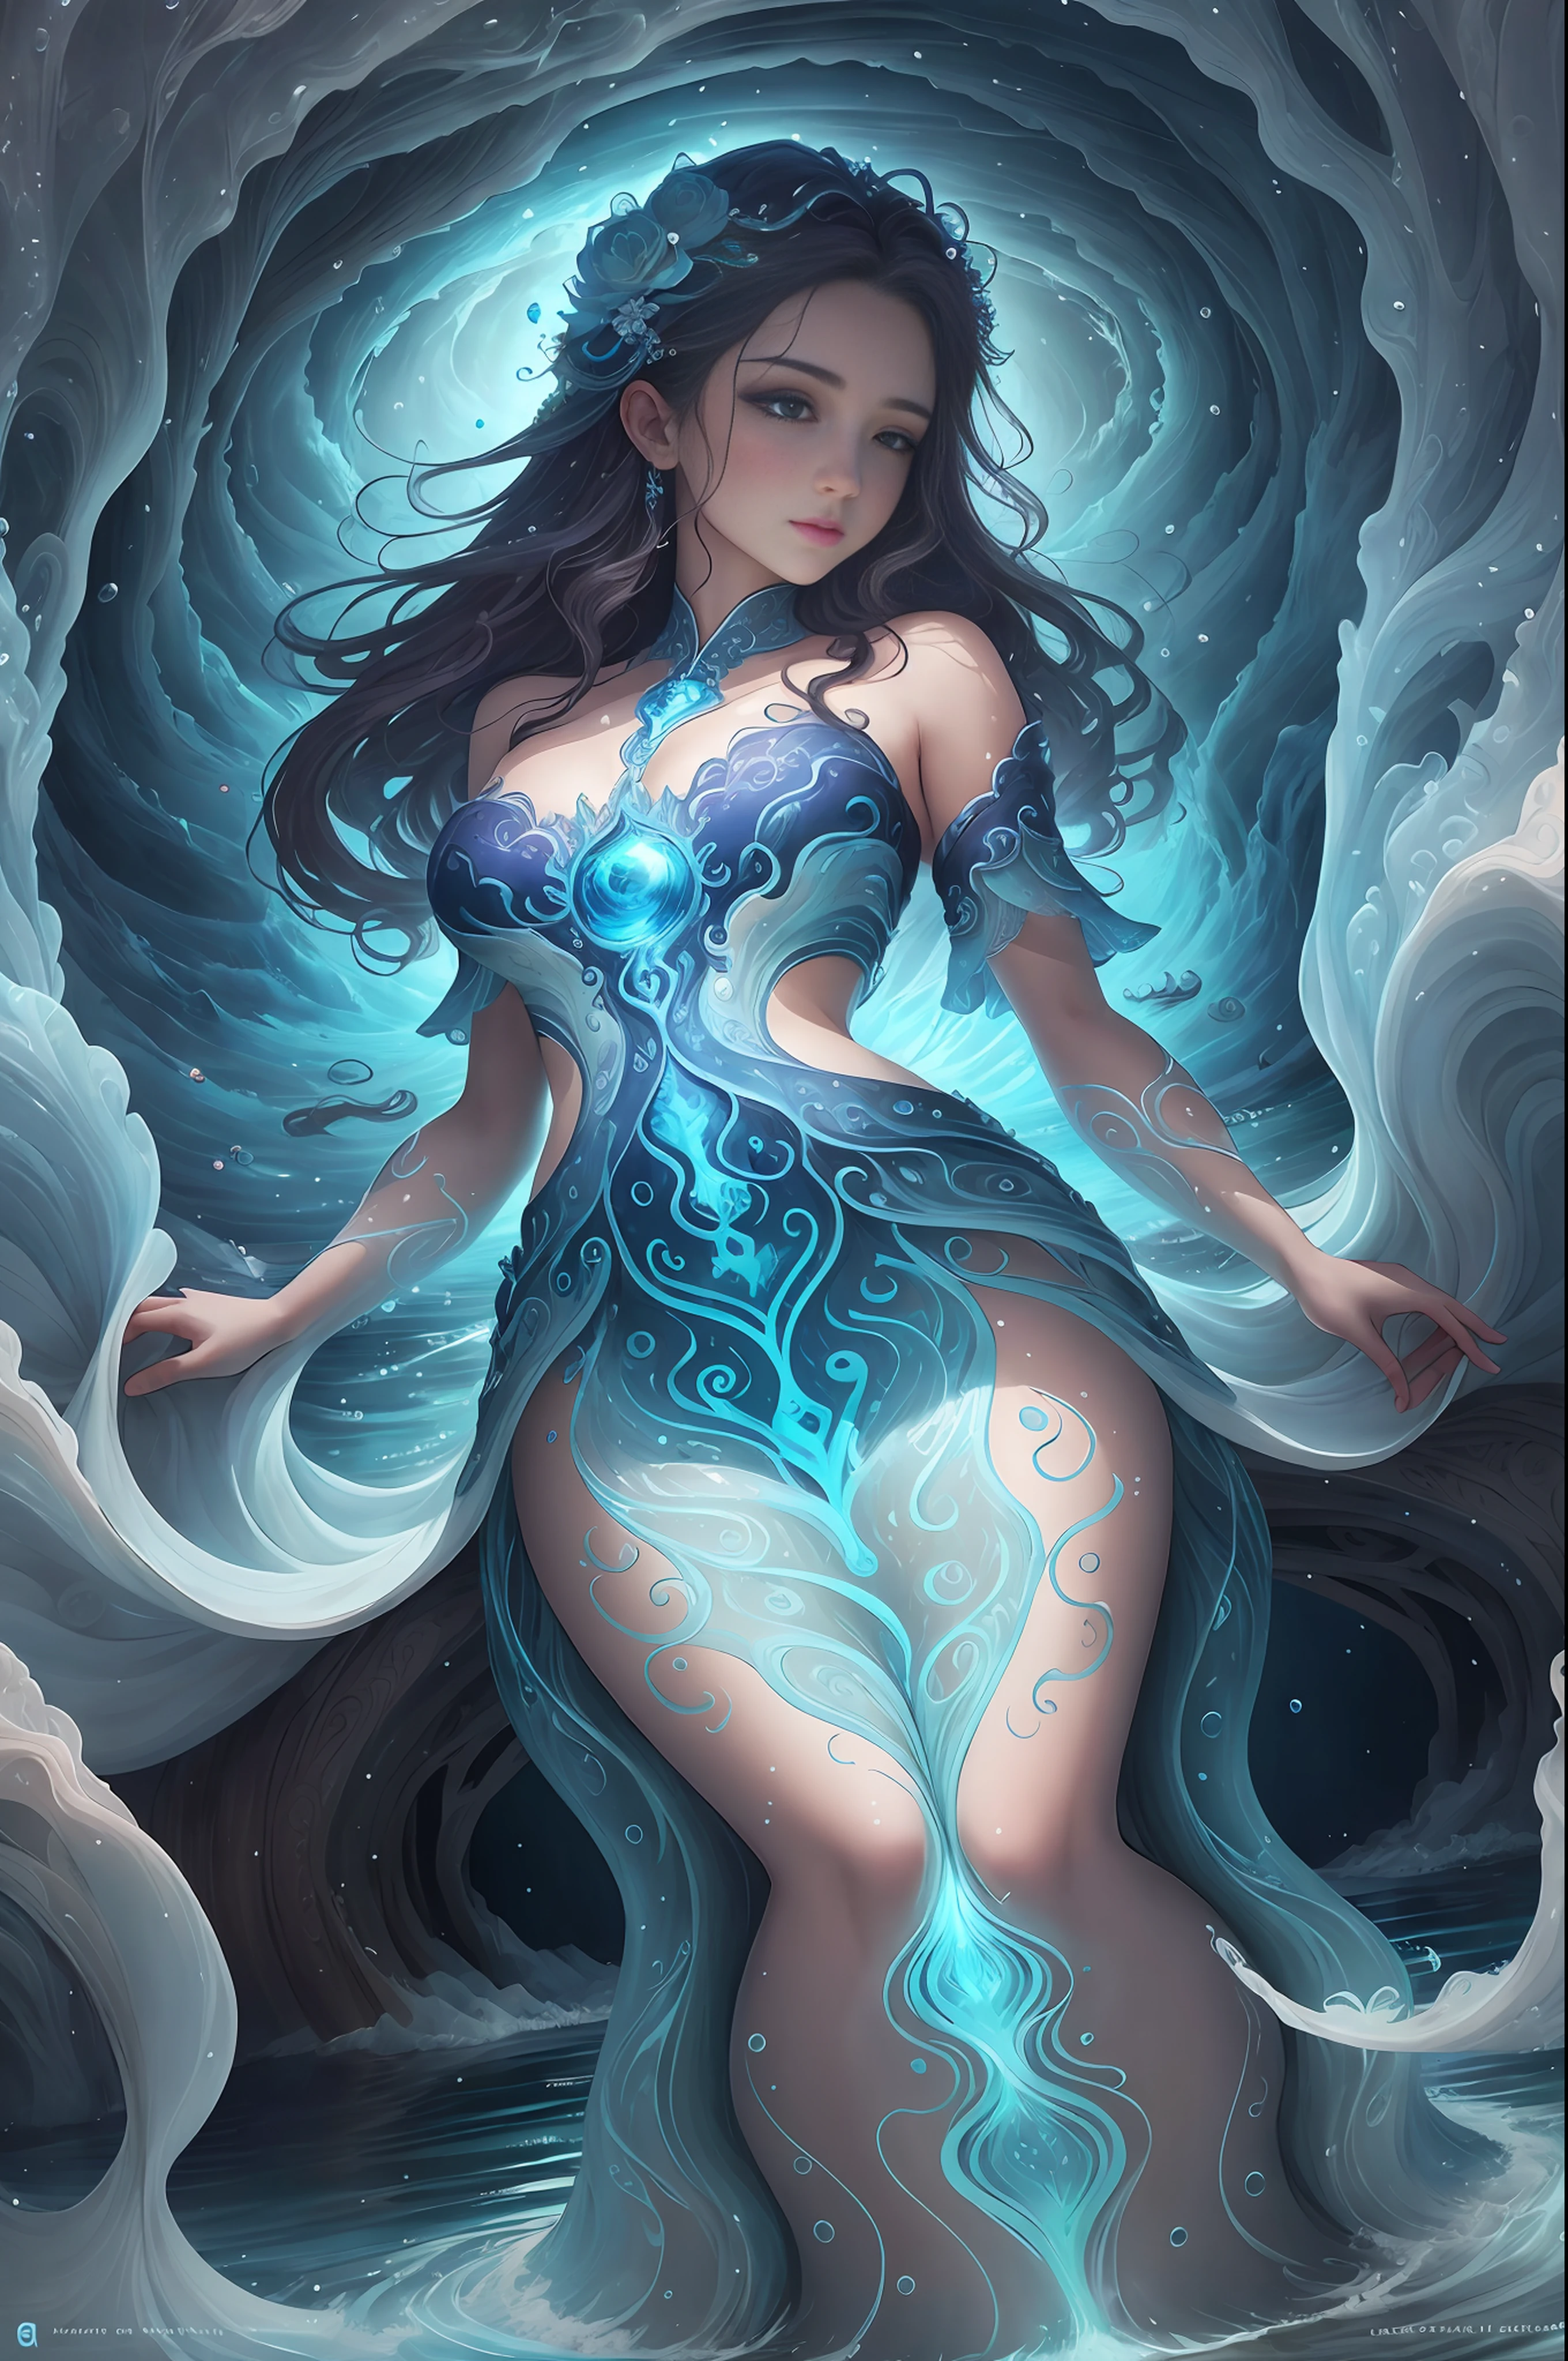 水灵以穿着迷人服装的女孩的形式出现, 诞生于自然河流, 湖泊和海洋, 生活在水的流动和波浪中, 水的守护者 纯净水的象征, 生命之源, 以及净化和重生的象征.

拥有与自然和谐的色调, 例如藍色, 浅蓝色, 和透明的.

它的形状像水流或波浪, 仿佛一位生活在美丽水边的仙女.

它可以根据水流改变外观.

有一个描绘美丽河流的背景, 湖泊和海洋希望保护水资源，恢复洁净水源, detailed 漂亮的臉蛋 and eyes, 大屁股, 明亮的白色背景, 簡單的背景, 从下面看, 傑作, 最好的品質, 最好的品質, 官方藝術, 美丽审美, 超現實主義, 漂亮的臉蛋, 健康的身材, 风格新颖独特, 美麗的頭髮, 光滑的皮膚, 娃娃脸